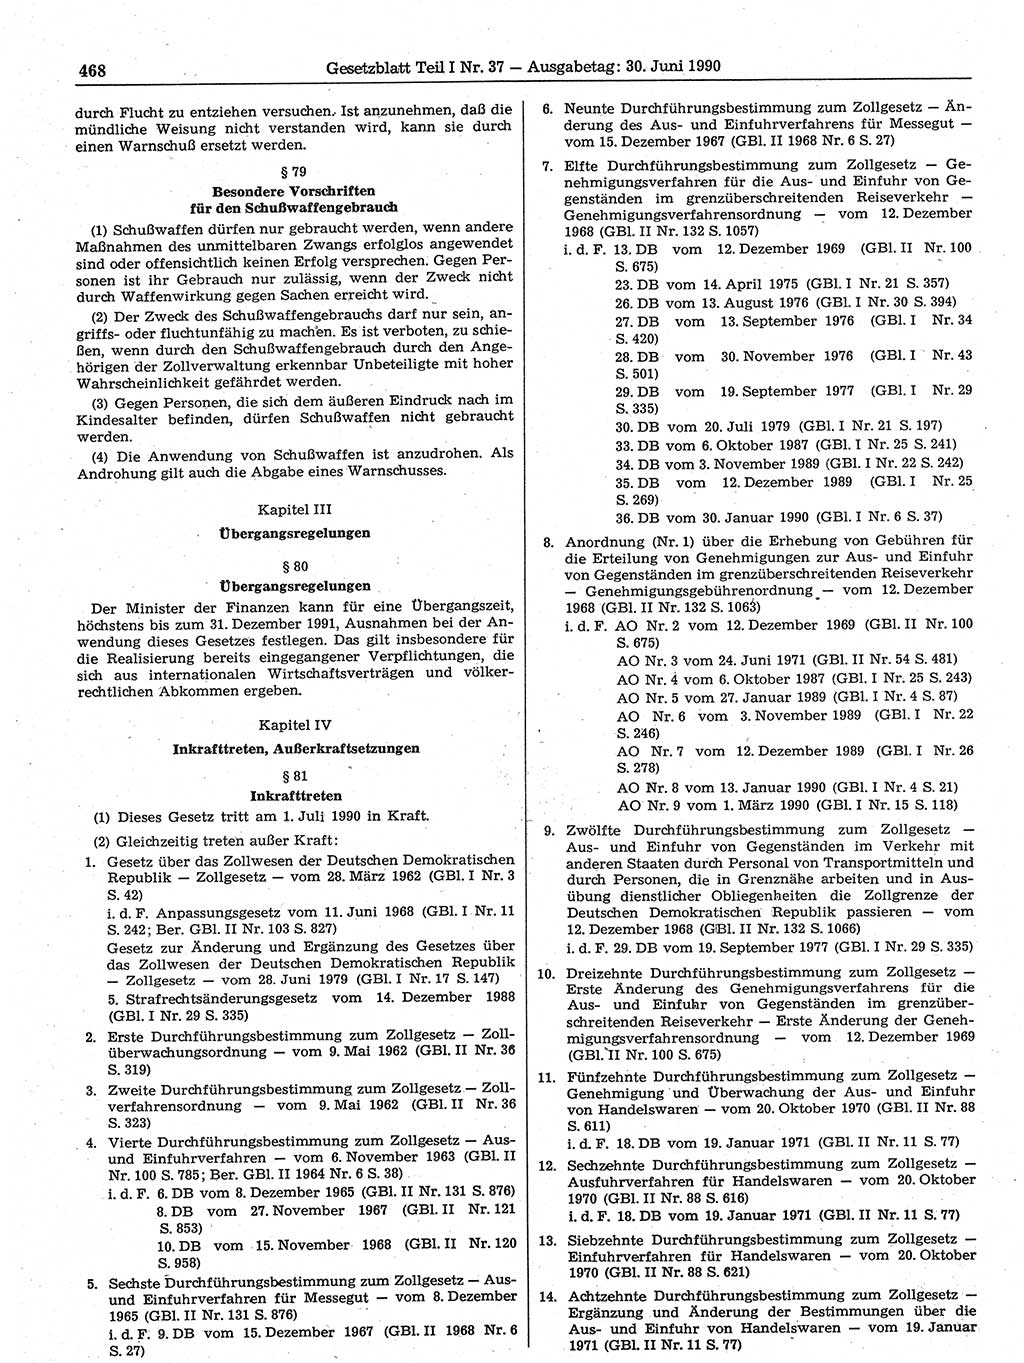 Gesetzblatt (GBl.) der Deutschen Demokratischen Republik (DDR) Teil Ⅰ 1990, Seite 468 (GBl. DDR Ⅰ 1990, S. 468)